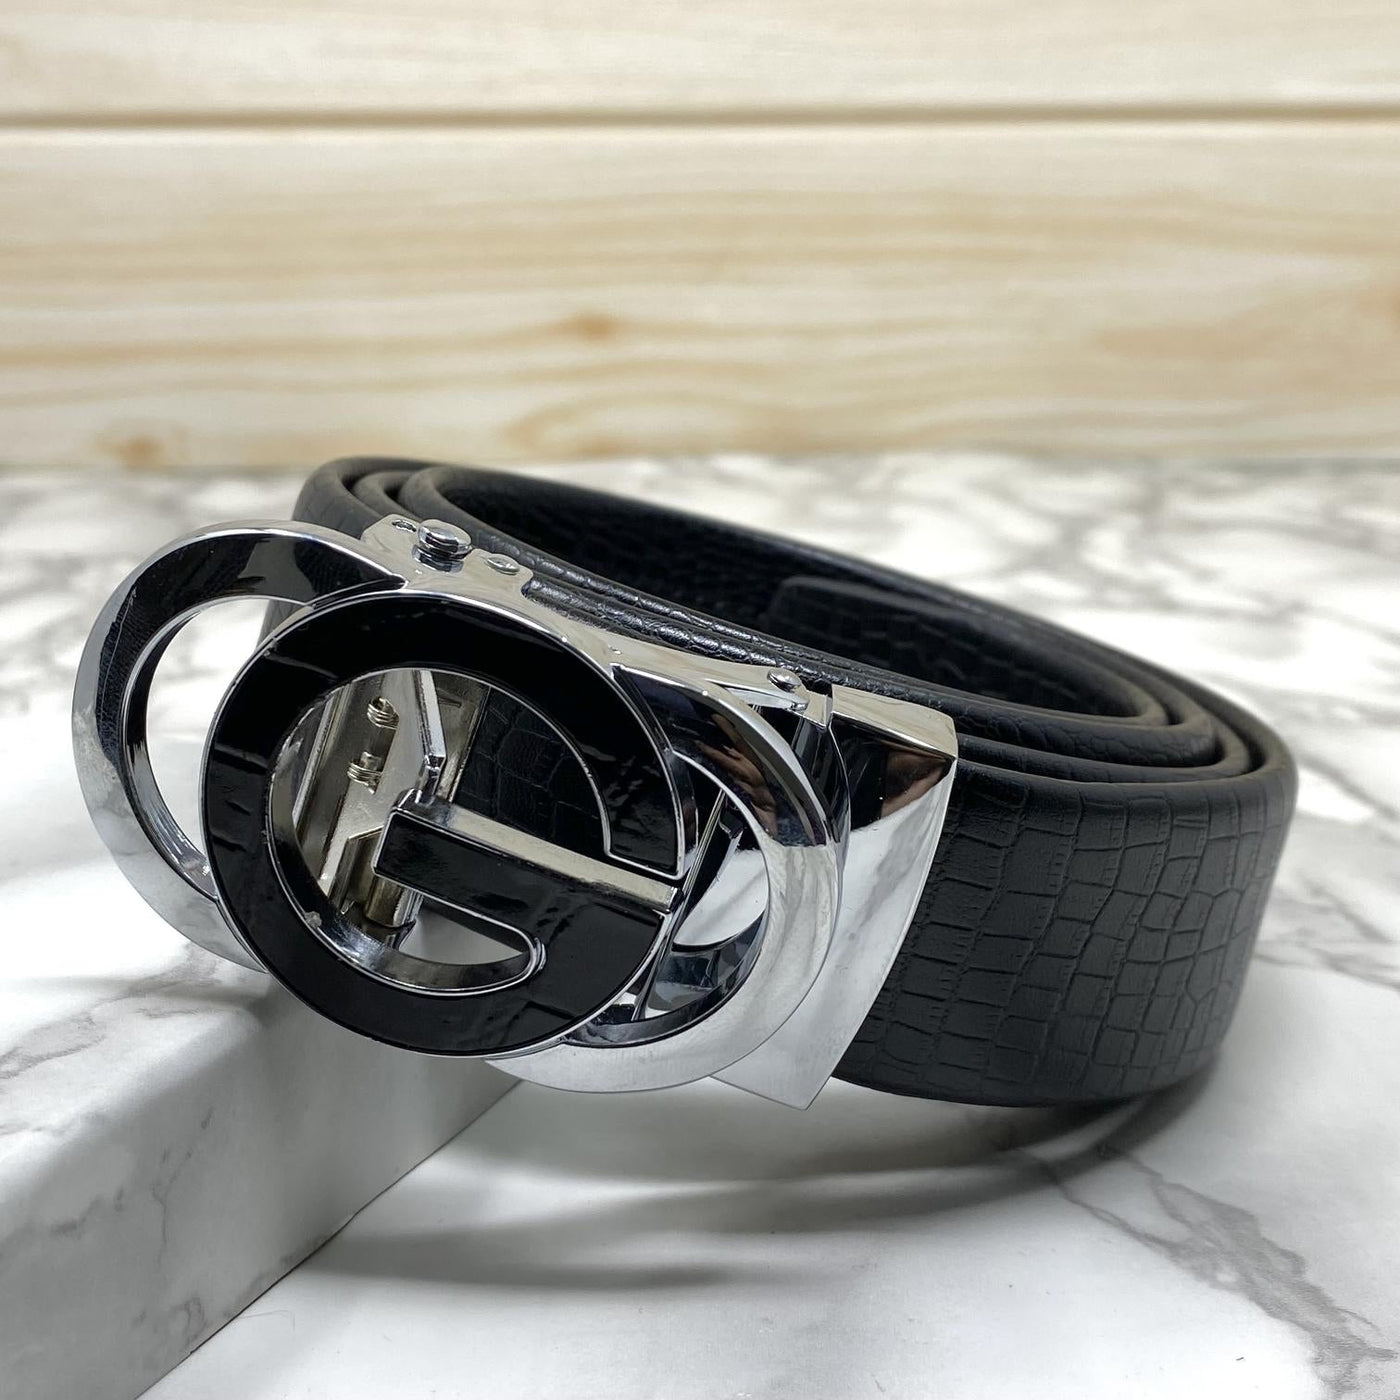 Tri G-Shape Casual Two Tone Adjustable Auto Belt For Men-UniqueandClassy